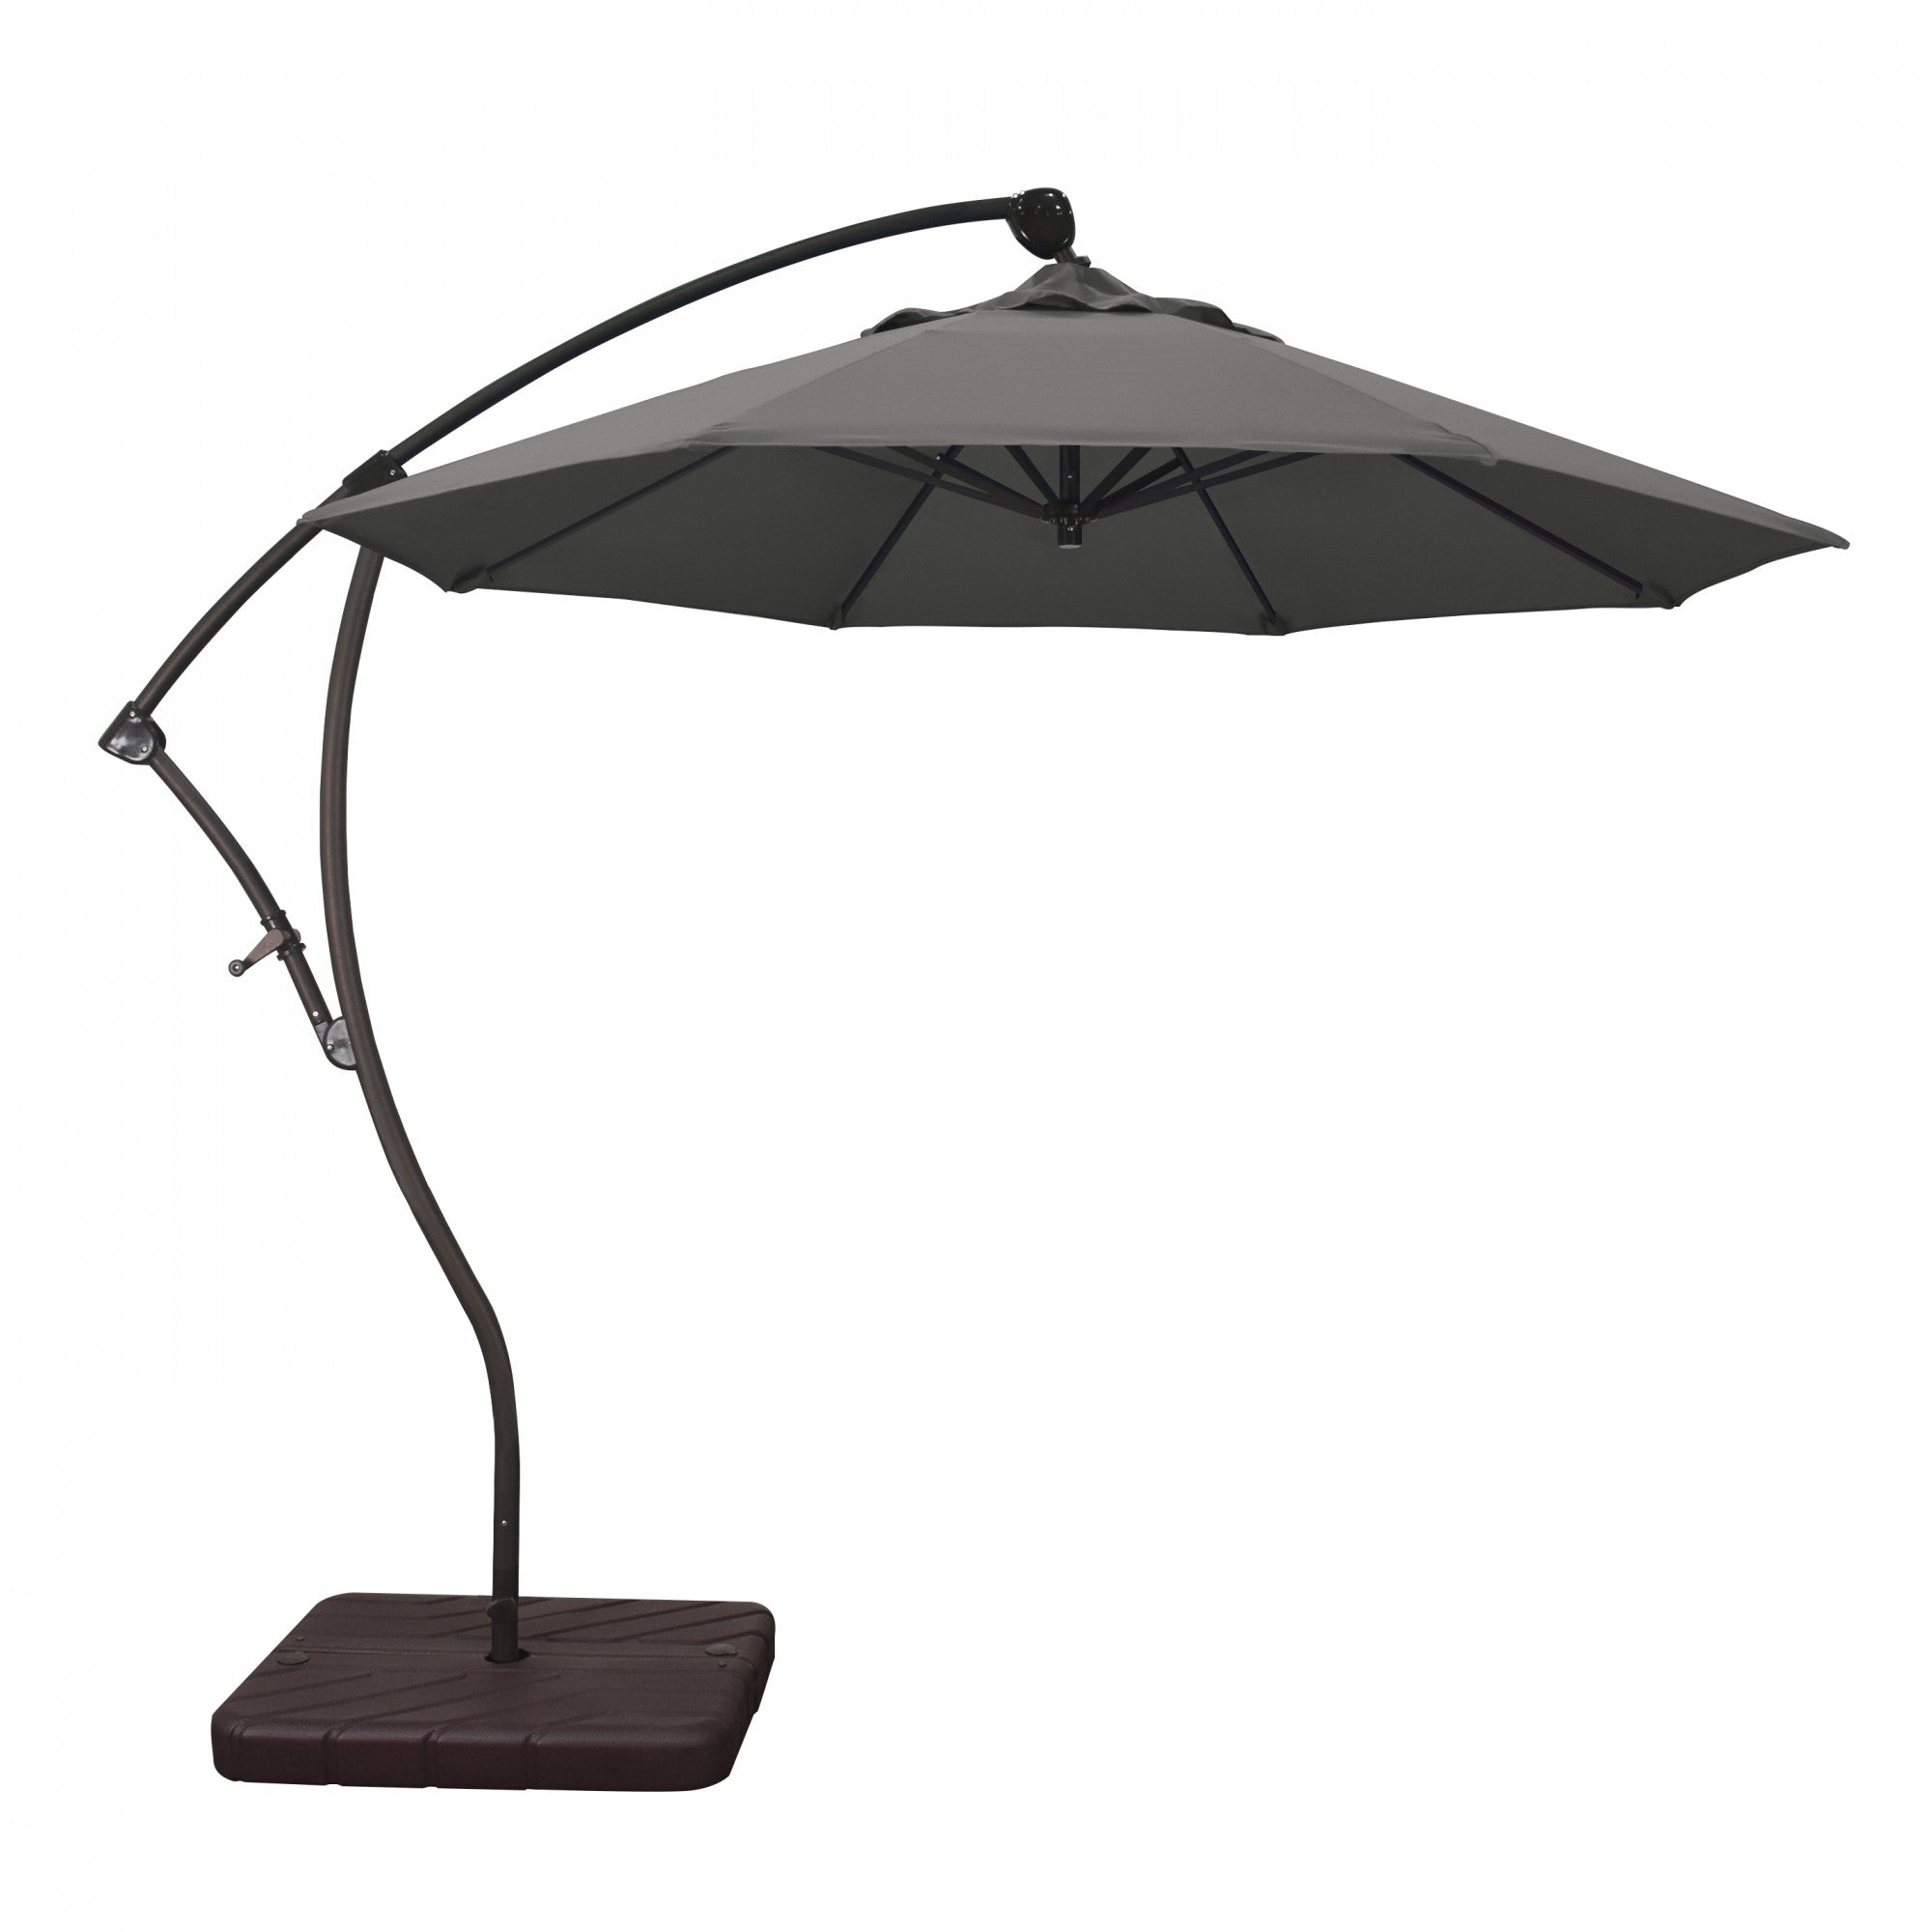 California Umbrella - 9' - Cantilever Umbrella - Aluminum Pole - Charcoal - Sunbrella  - BA908117-54048